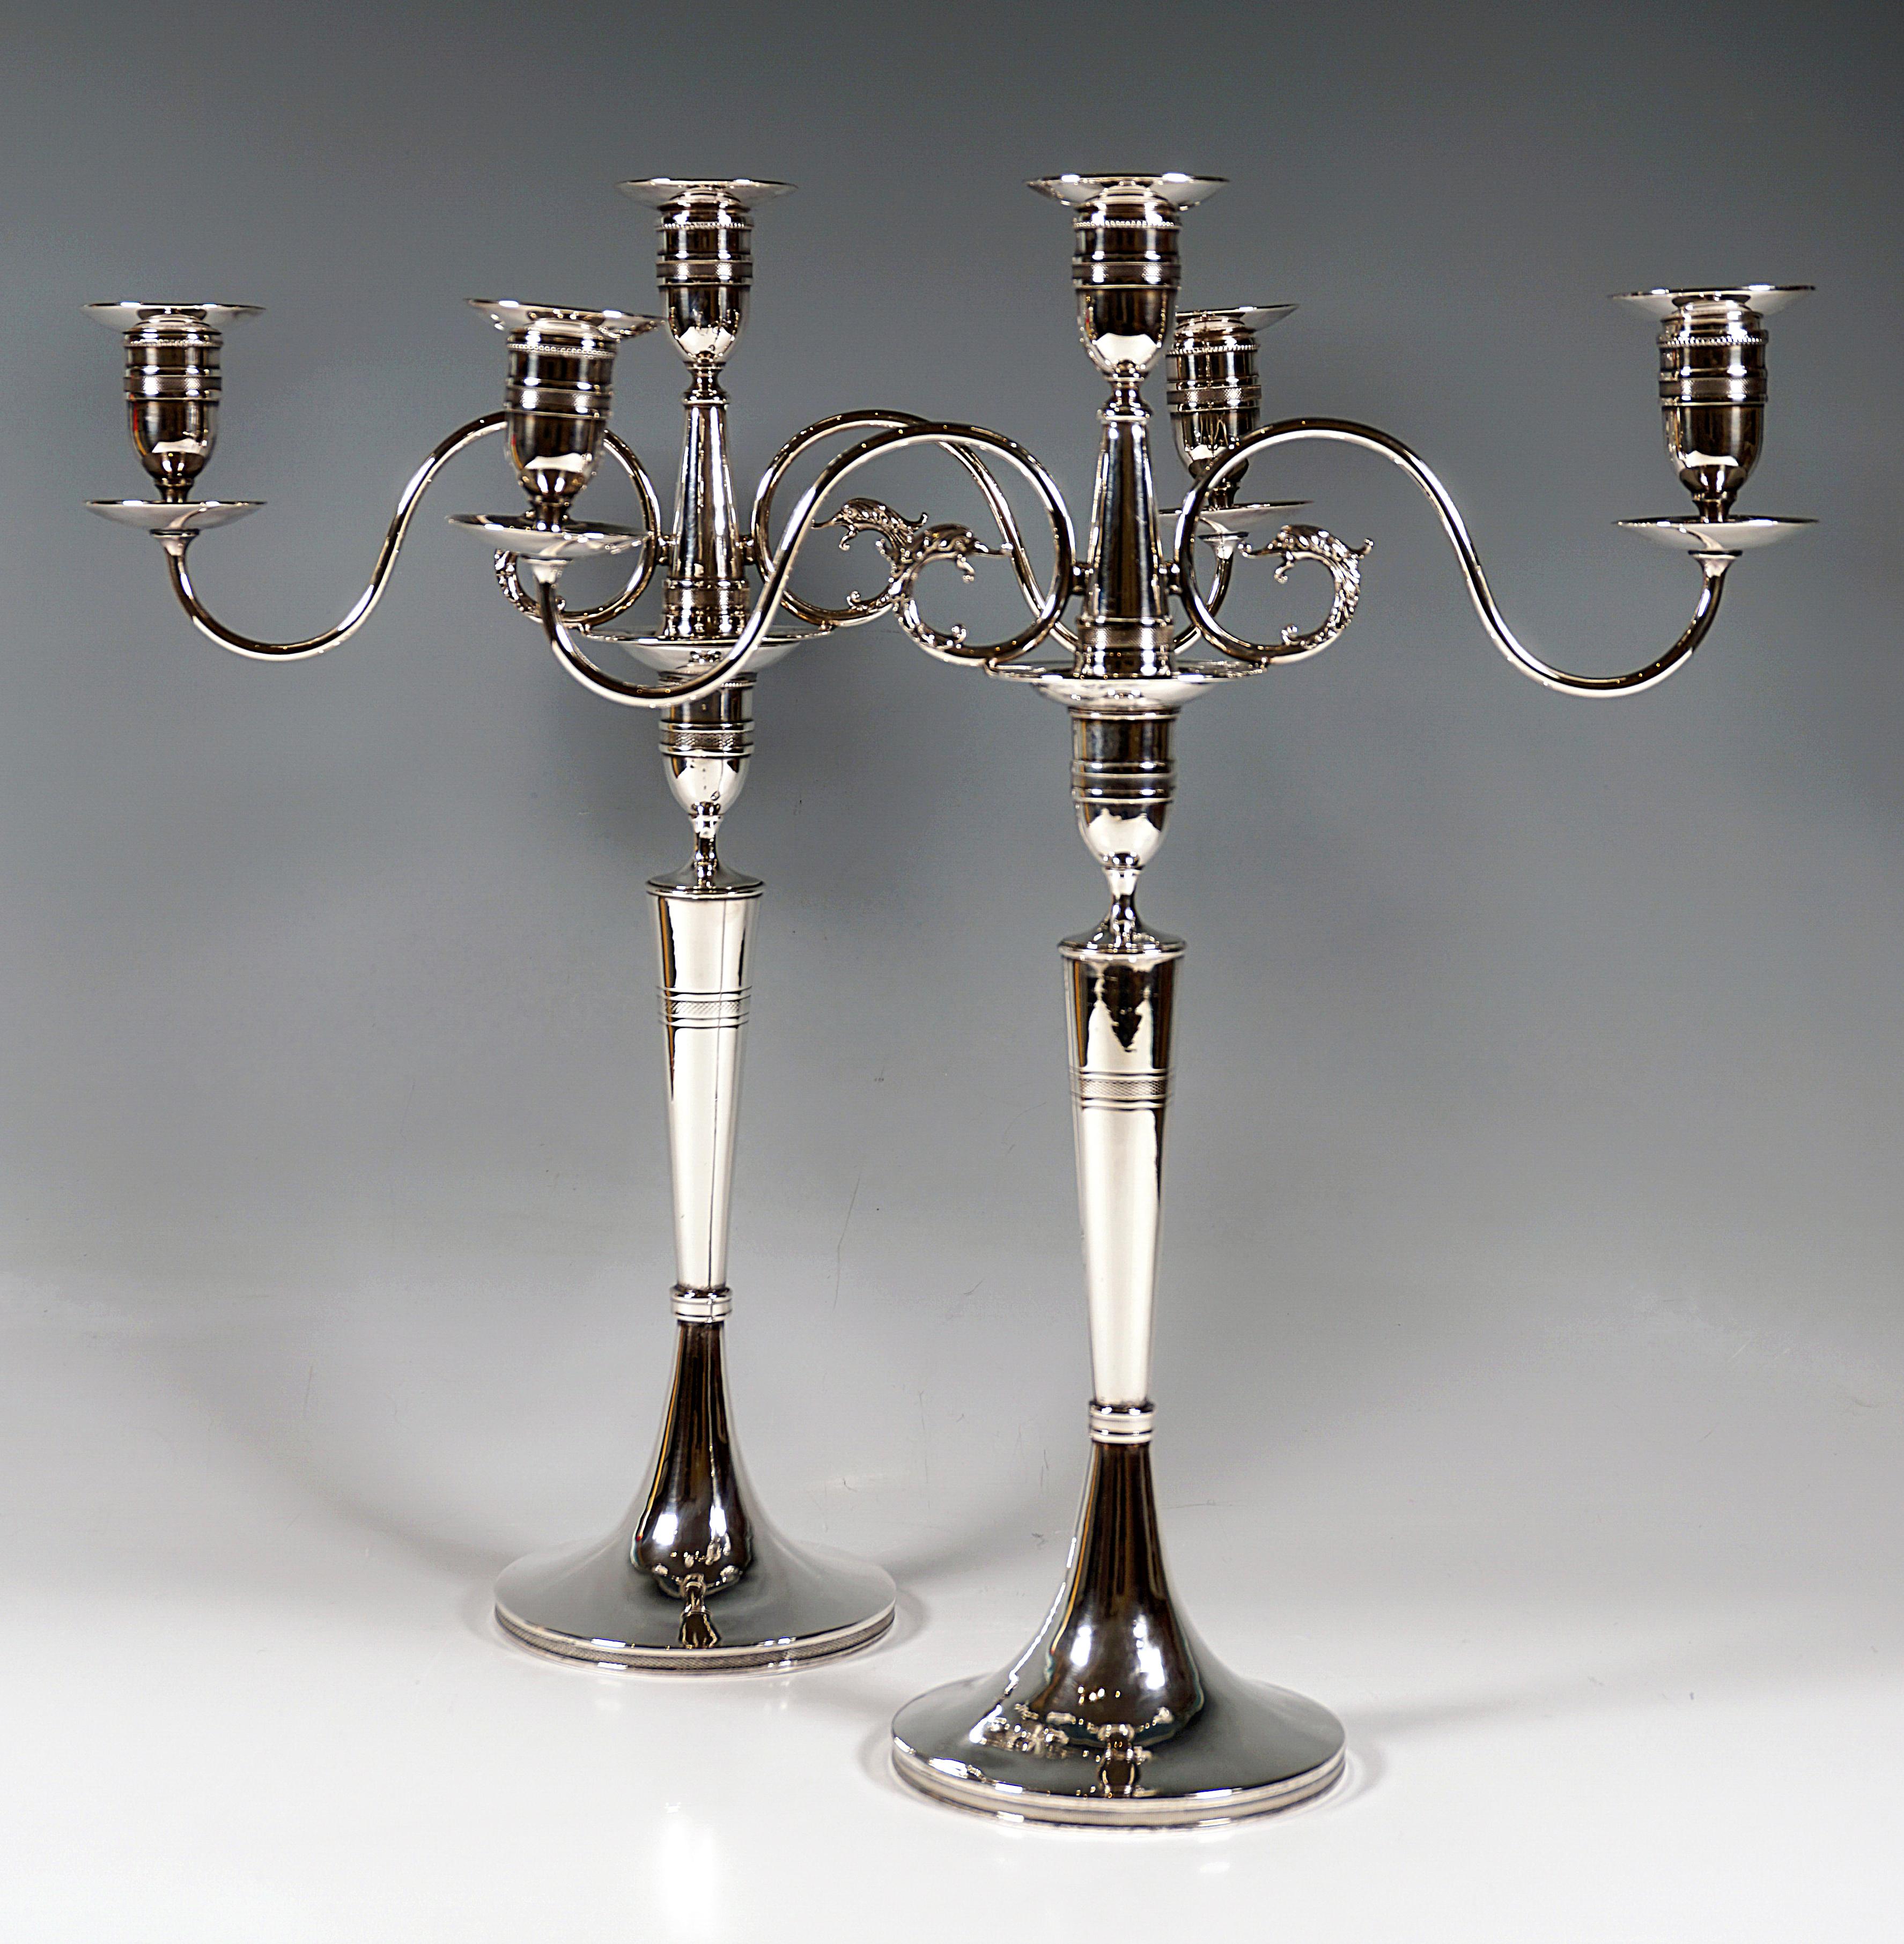 Zwei elegante 3-flammige Silbergirandolen auf rundem Sockel, glatter Schaft in der Mitte erhöht, das untere Drittel durch einen profilierten Wulstring eingeengt, der Schaft sich nach oben hin konisch verbreiternd, oben eine vasenförmige Tülle als